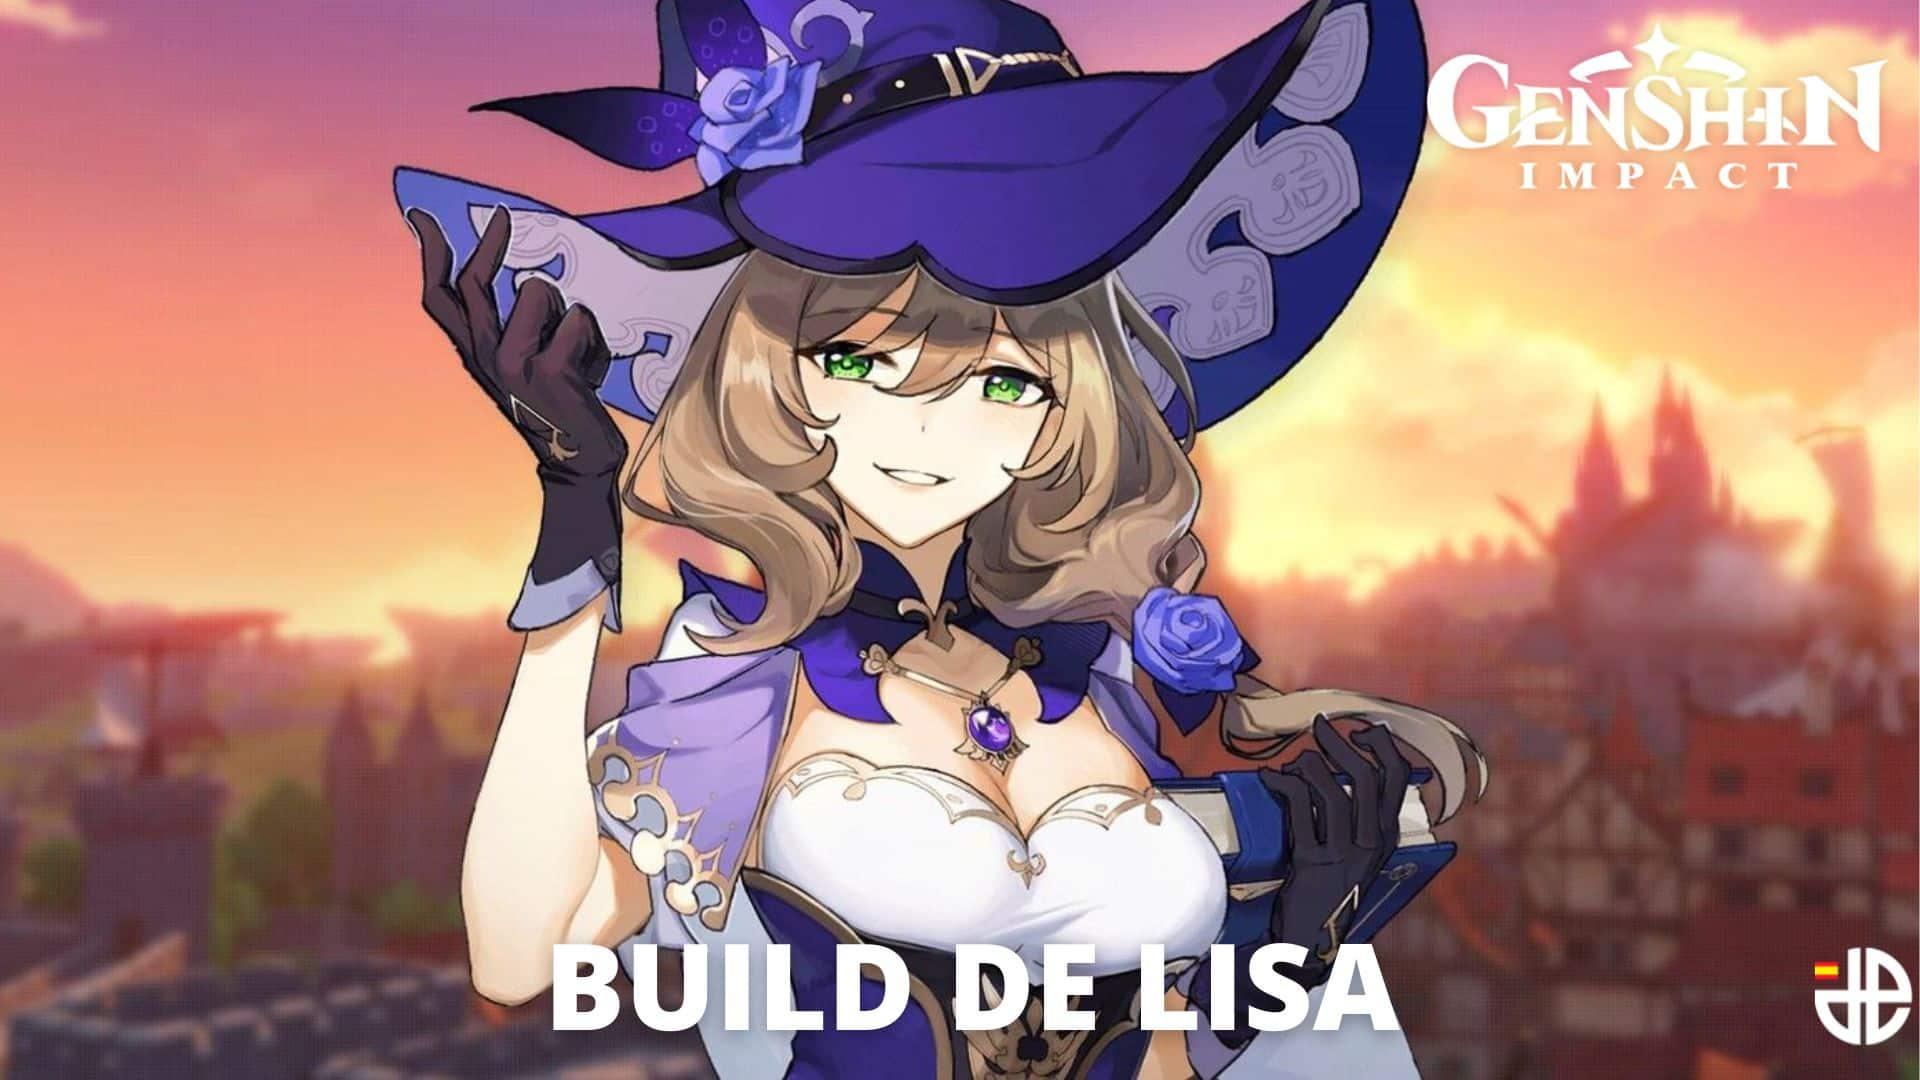 build lisa